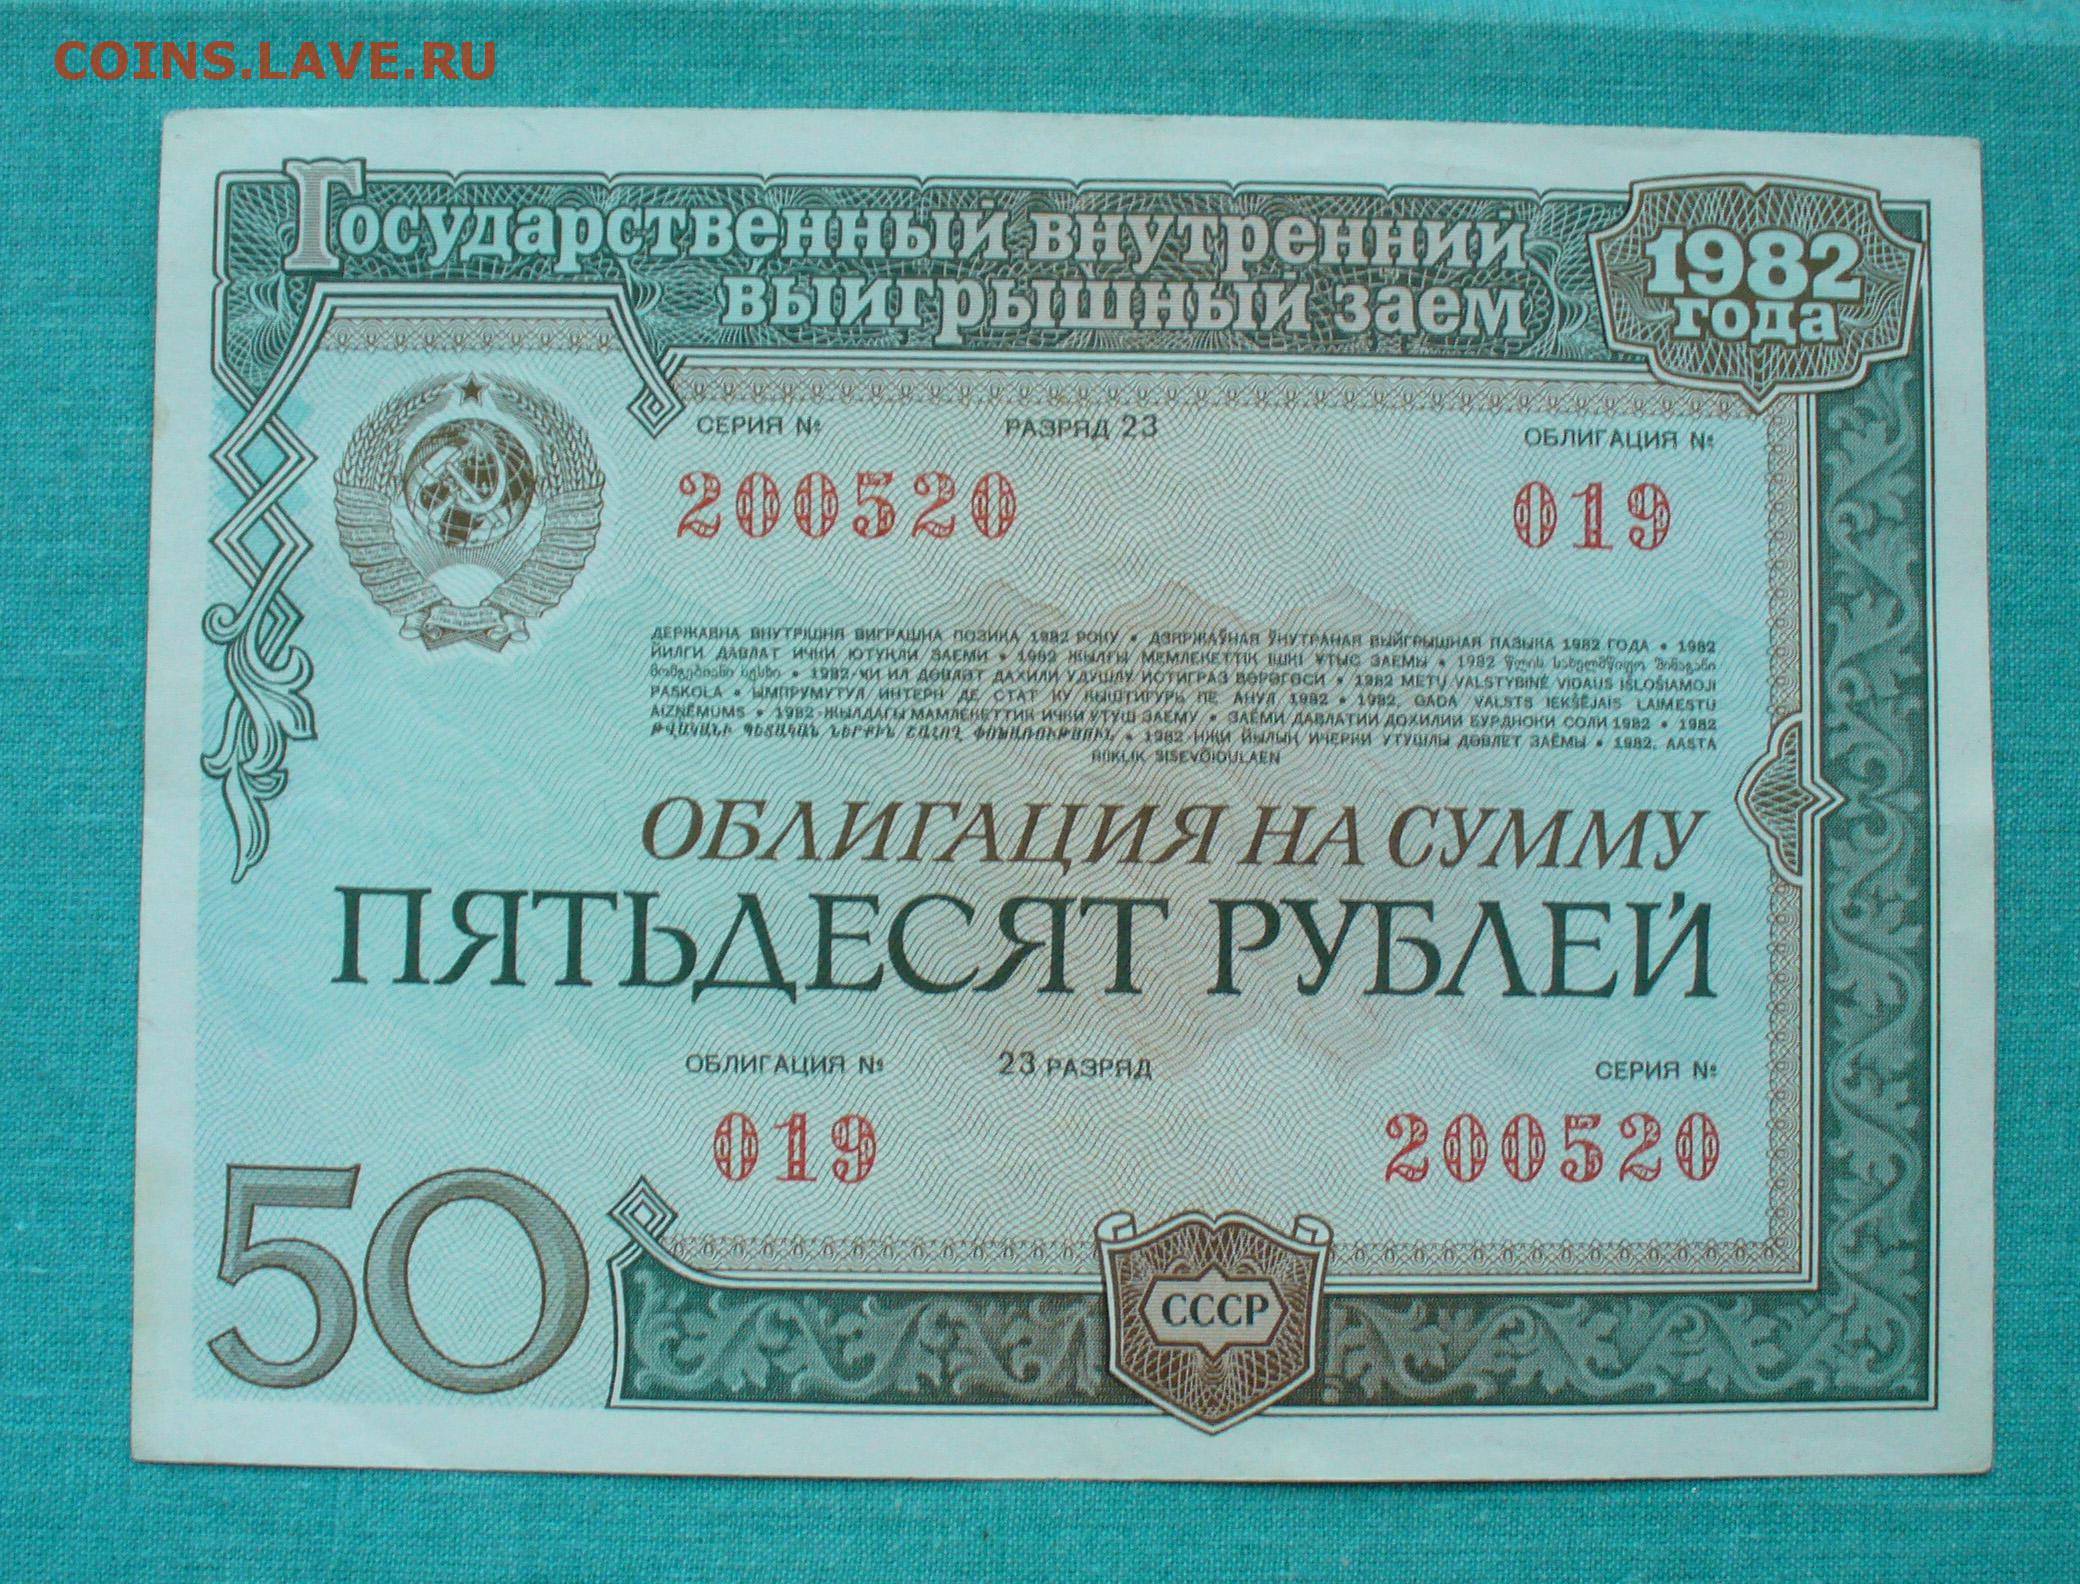 Заем 1982 года. Облигации СССР. Облигация это ценная бумага. Облигации государственного займа СССР. Ценные бумаги СССР облигации.